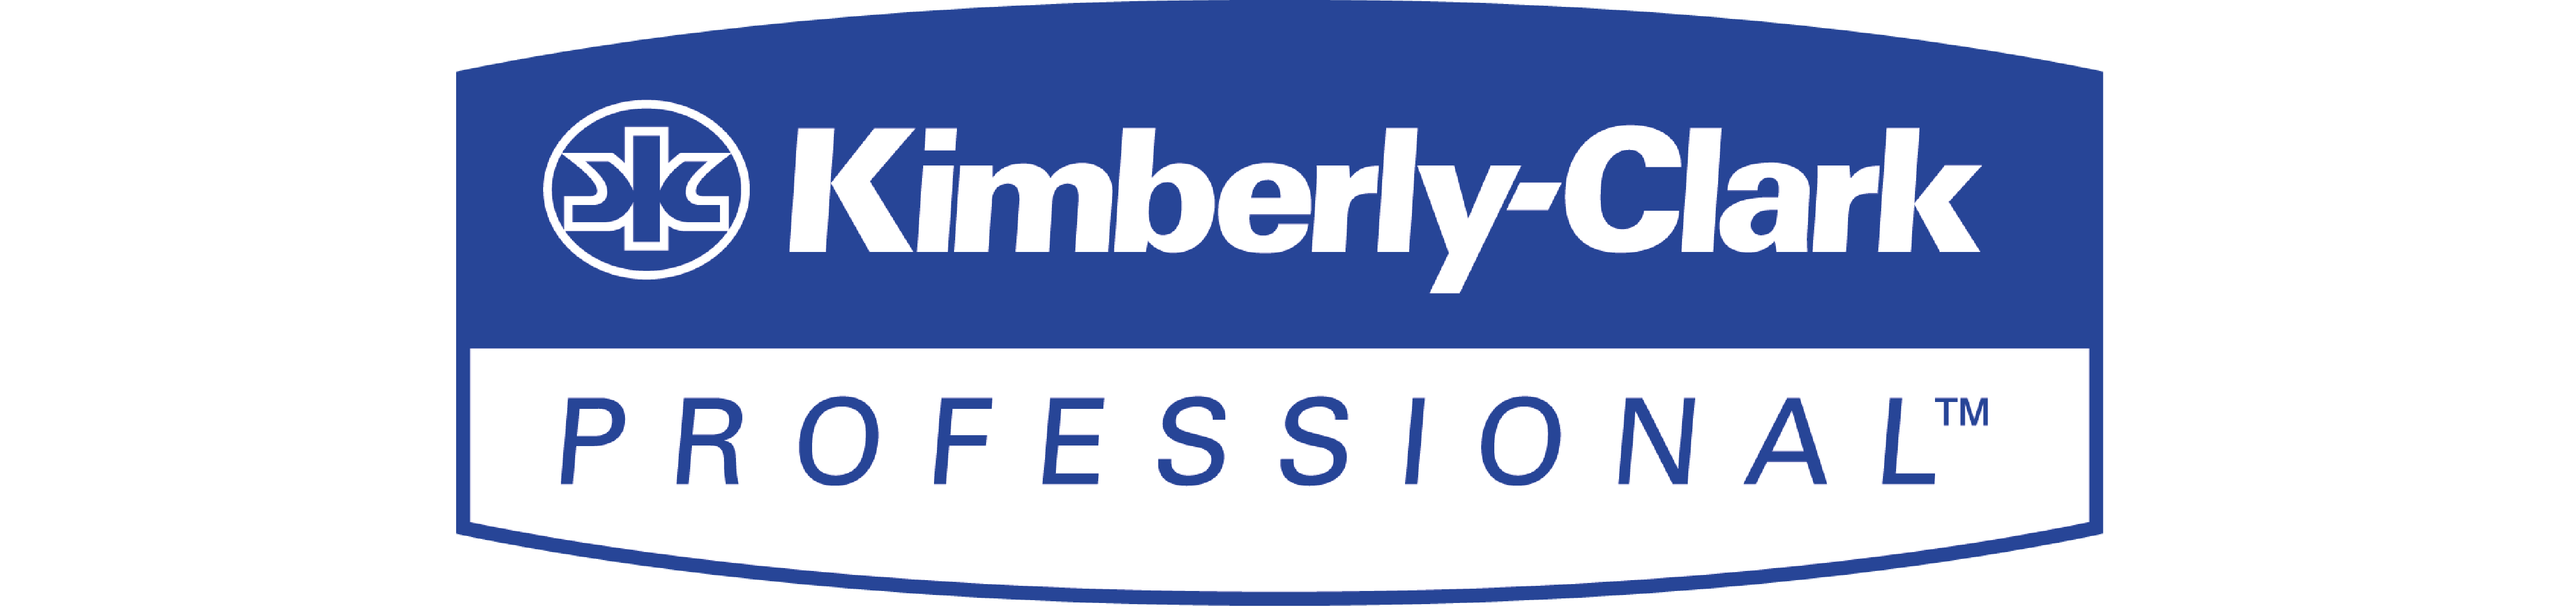 Kimberly clark logo